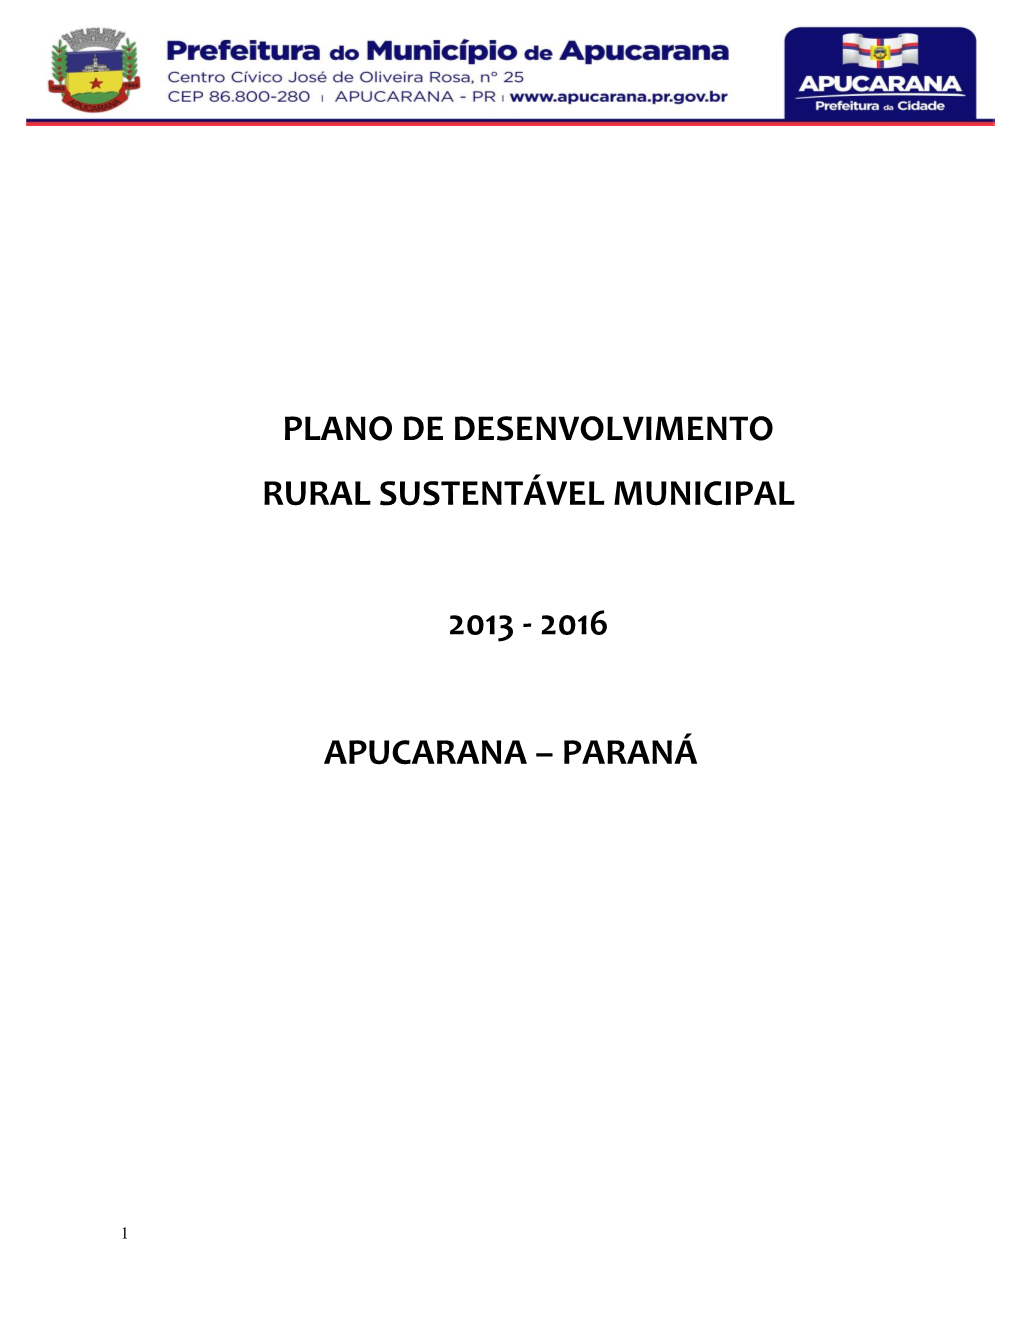 Plano De Desenvolvimento Rural Sustentável Municipal 2013